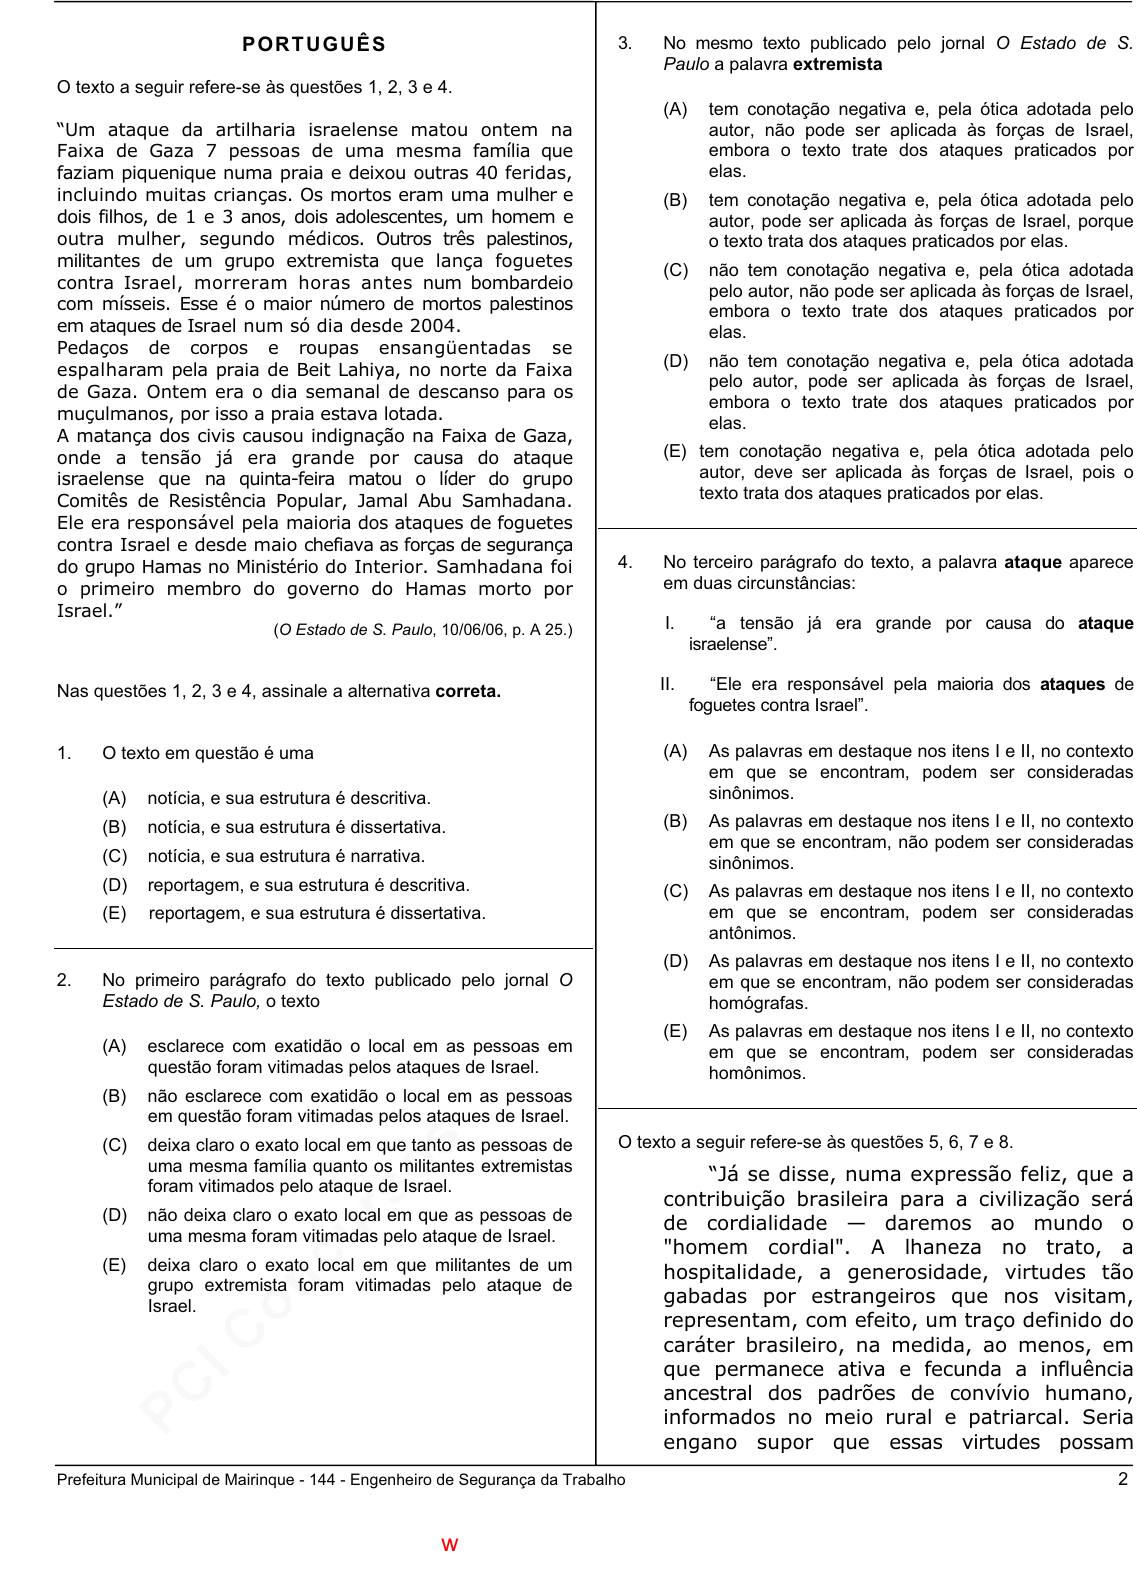 Prova Pref. MairinqueSP - CETRO - 2006 - para Engenheiro em Segurança do  Trabalho.pdf - Provas de Concursos Públicos